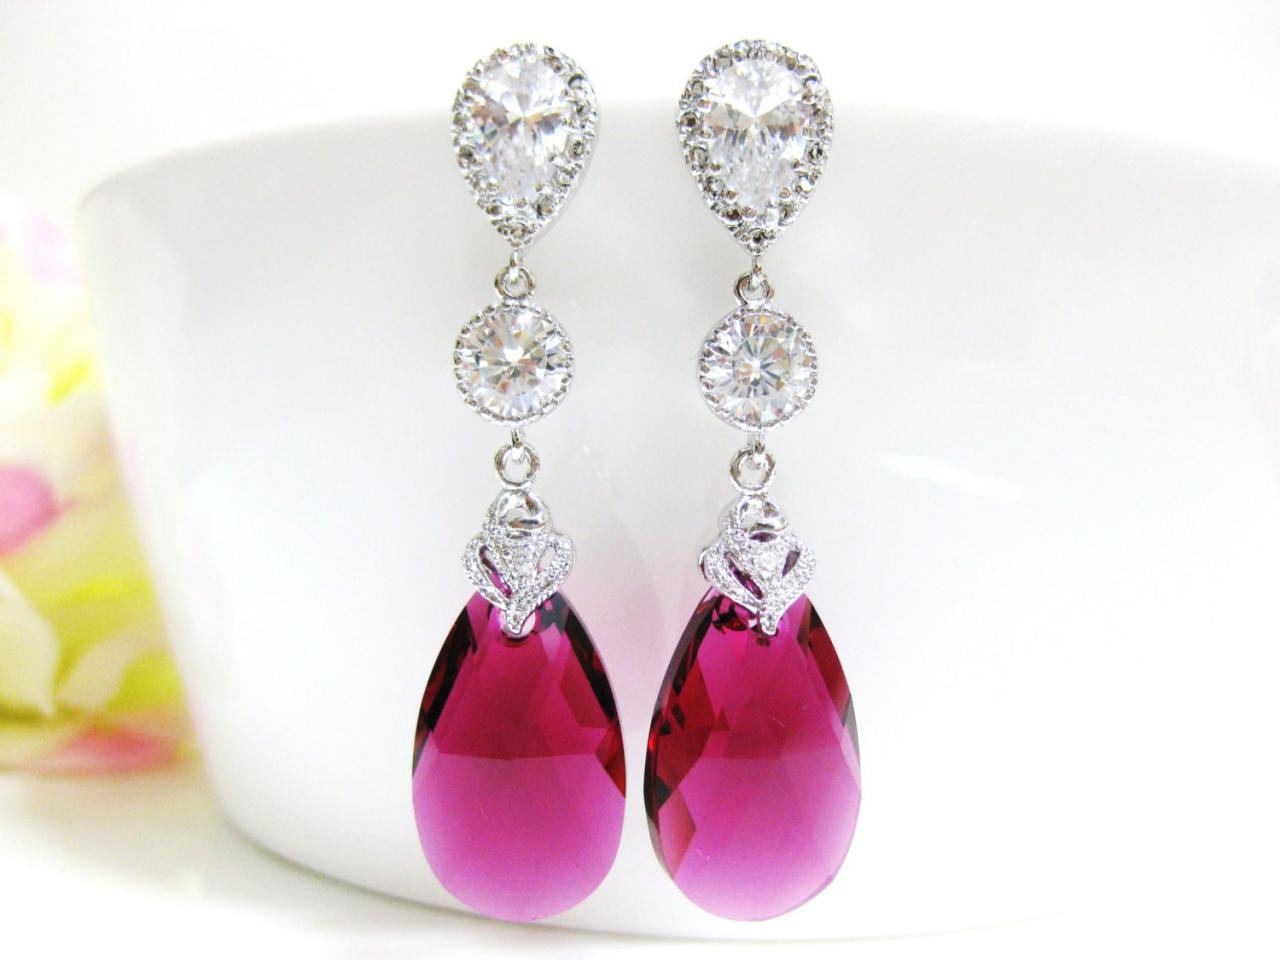 Fuchsia Teardrop Earrings Swarovski Ruby Earrings Hot Pink Earrings Cubic Zirconia Earrings Wedding Jewelry Red Earrings (E156)